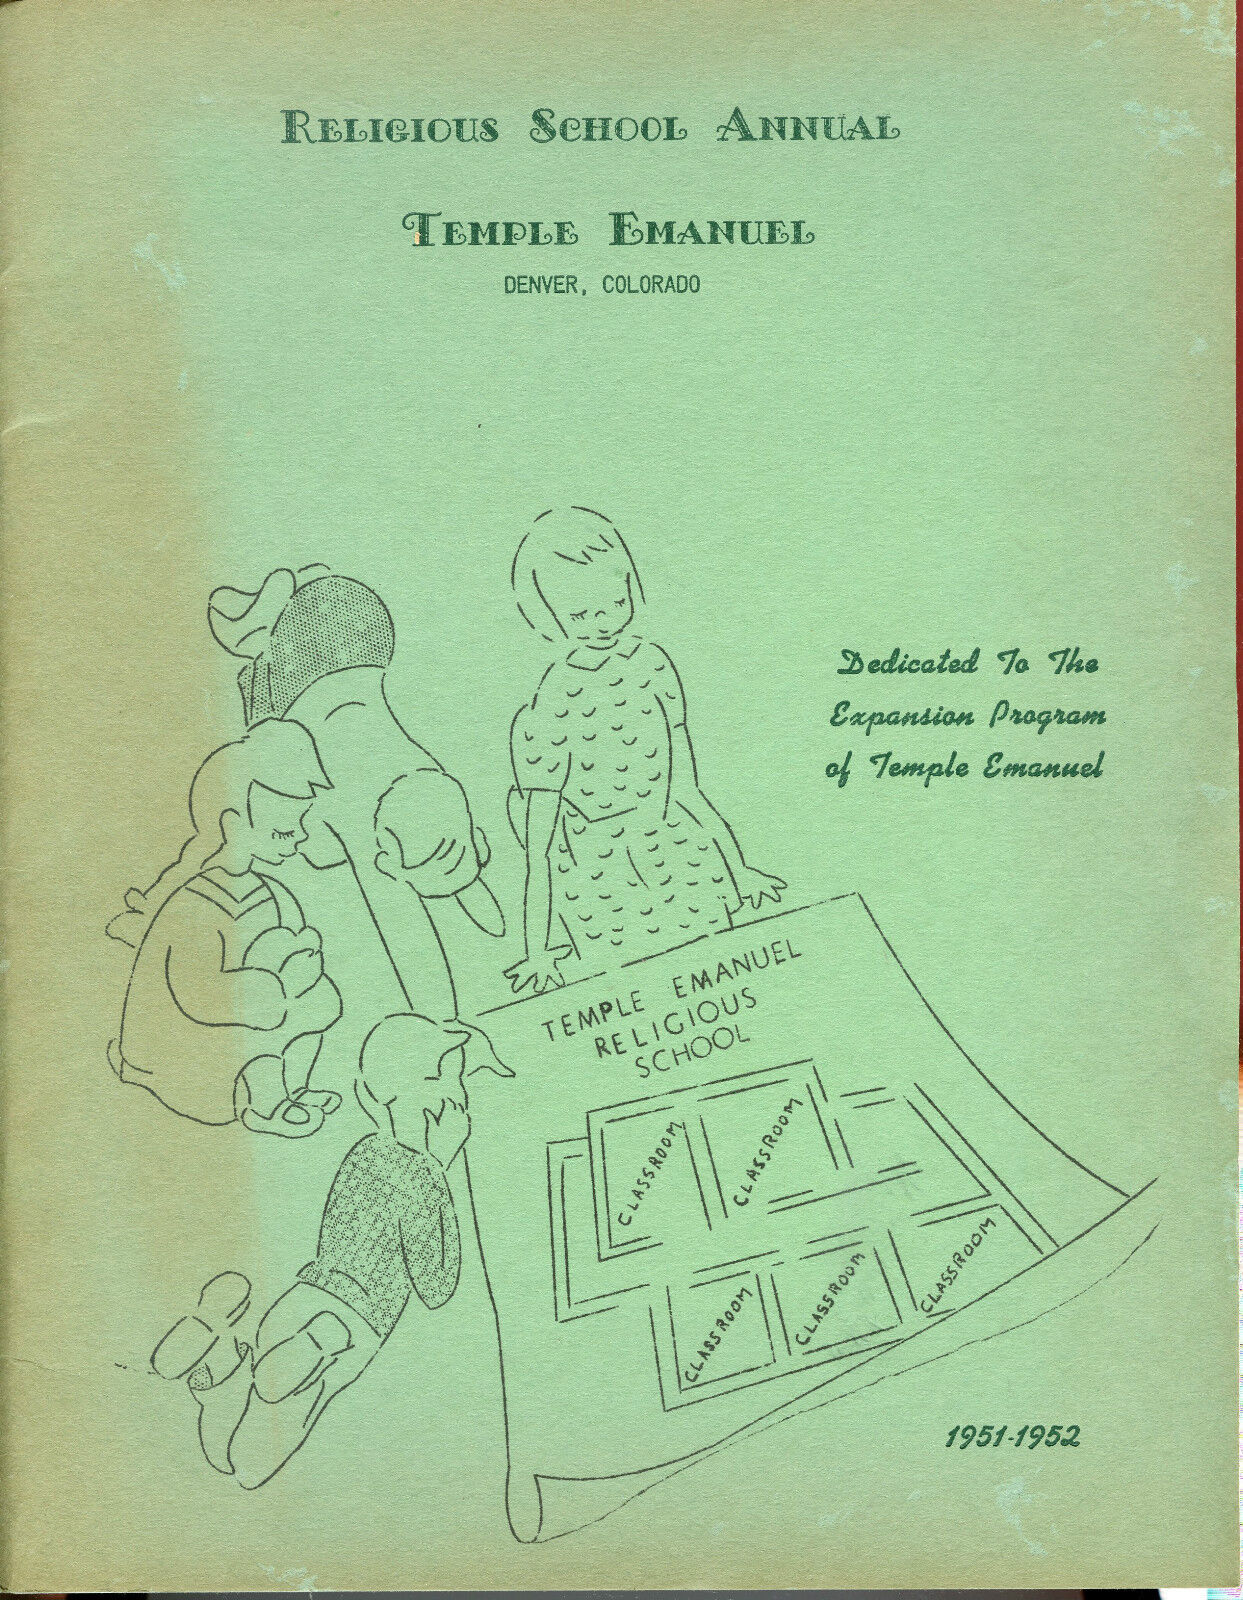 Denver, Colorado-Temple Emanuel-Religious School Annual 1951-1952 Yearbook